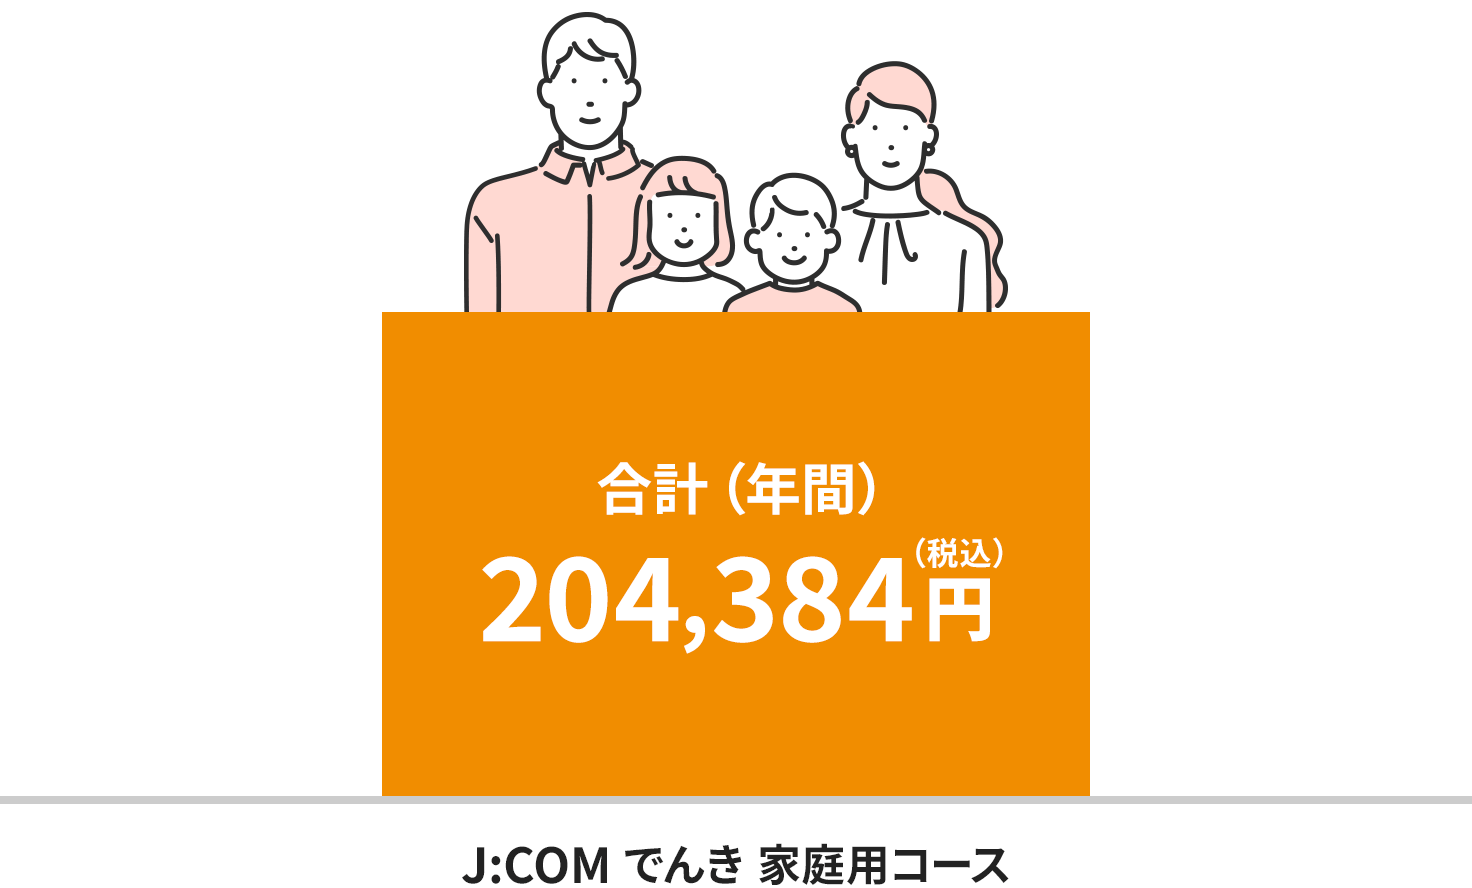 Hình ảnh phí tại khu vực Điện lực Kansai (dành cho hộ gia đình 4 người)